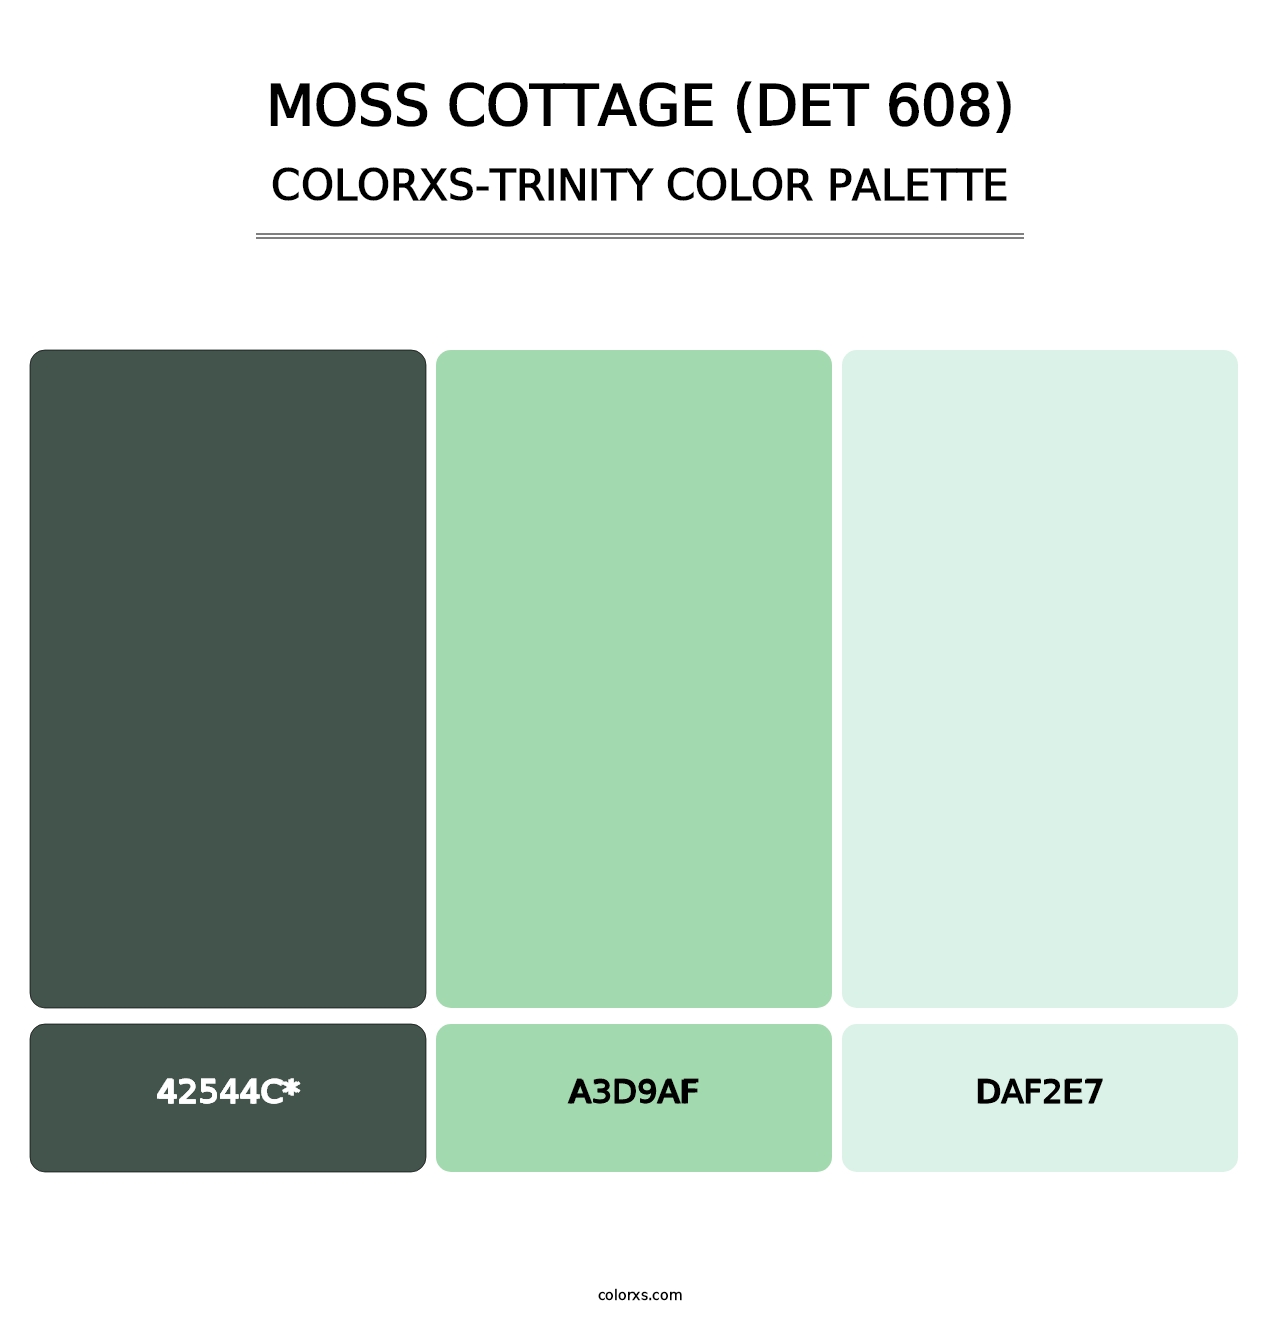 Moss Cottage (DET 608) - Colorxs Trinity Palette